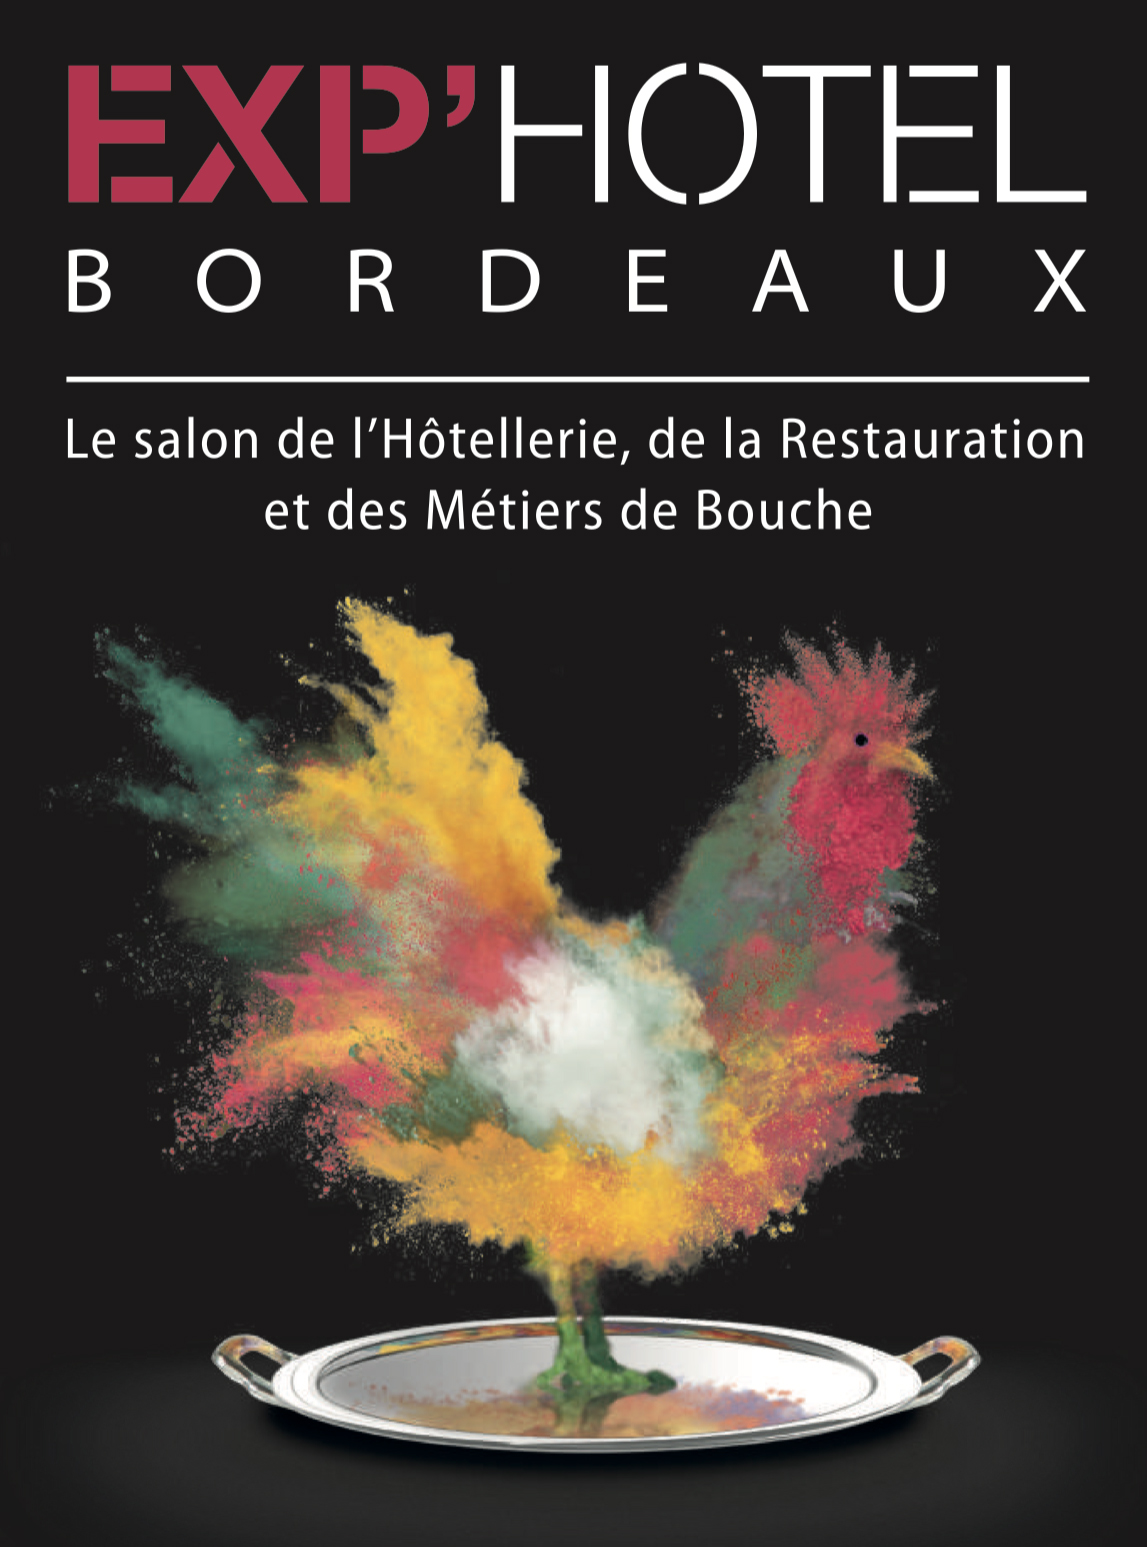 Du 24 au 26 novembre : Exp’Hôtel à Bordeaux